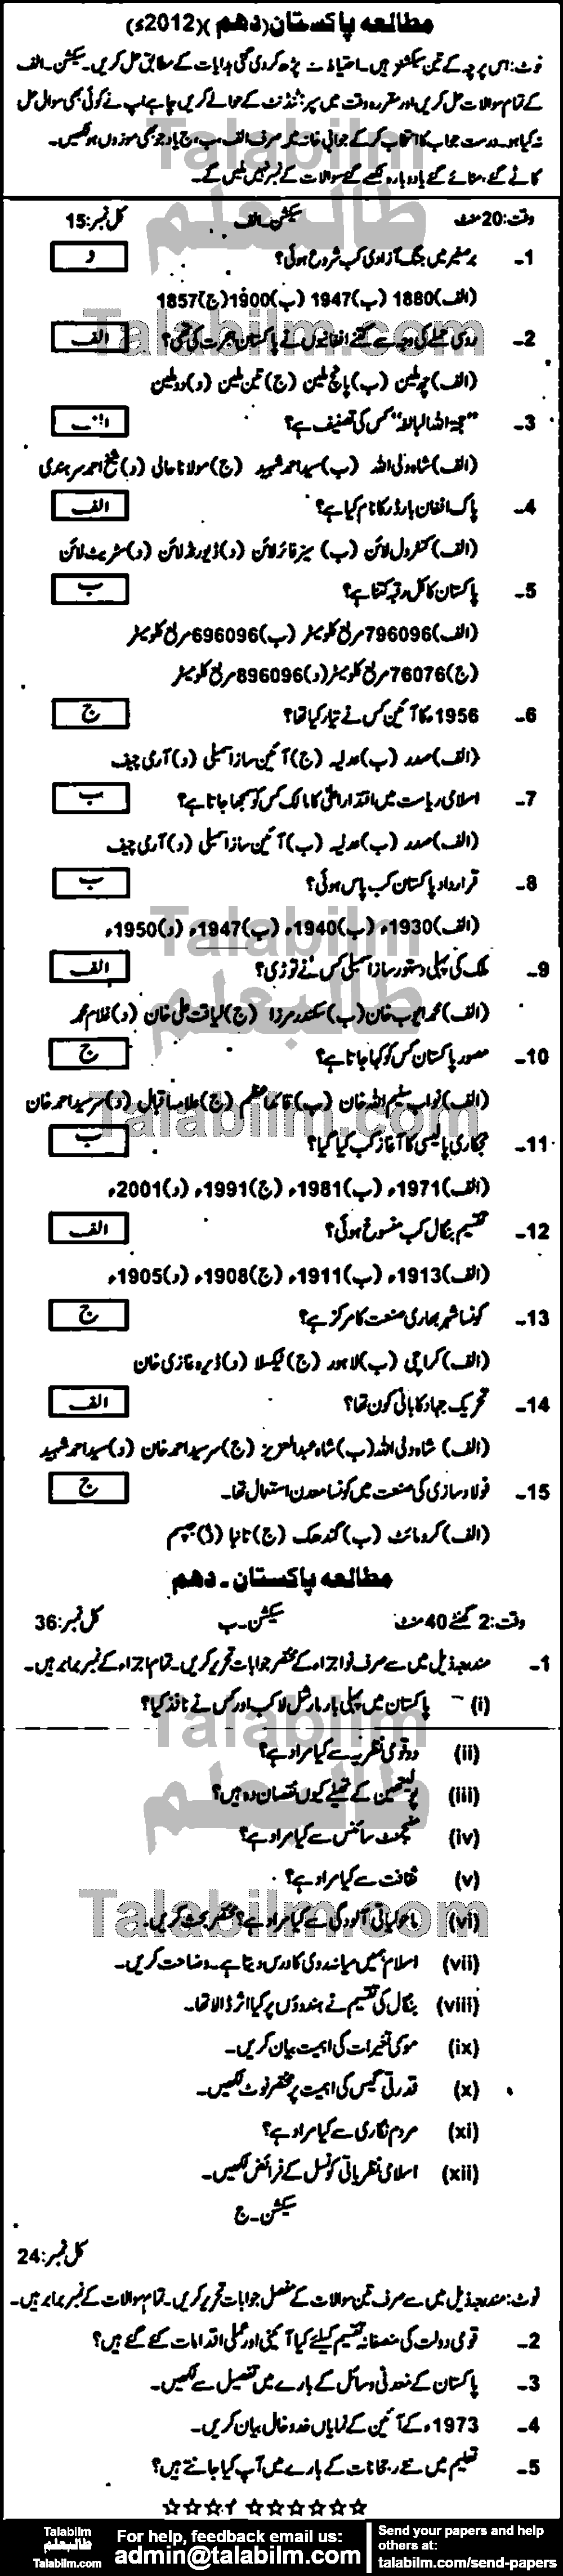 Pak Studies 0 past paper for Urdu Medium 2012 Group-I